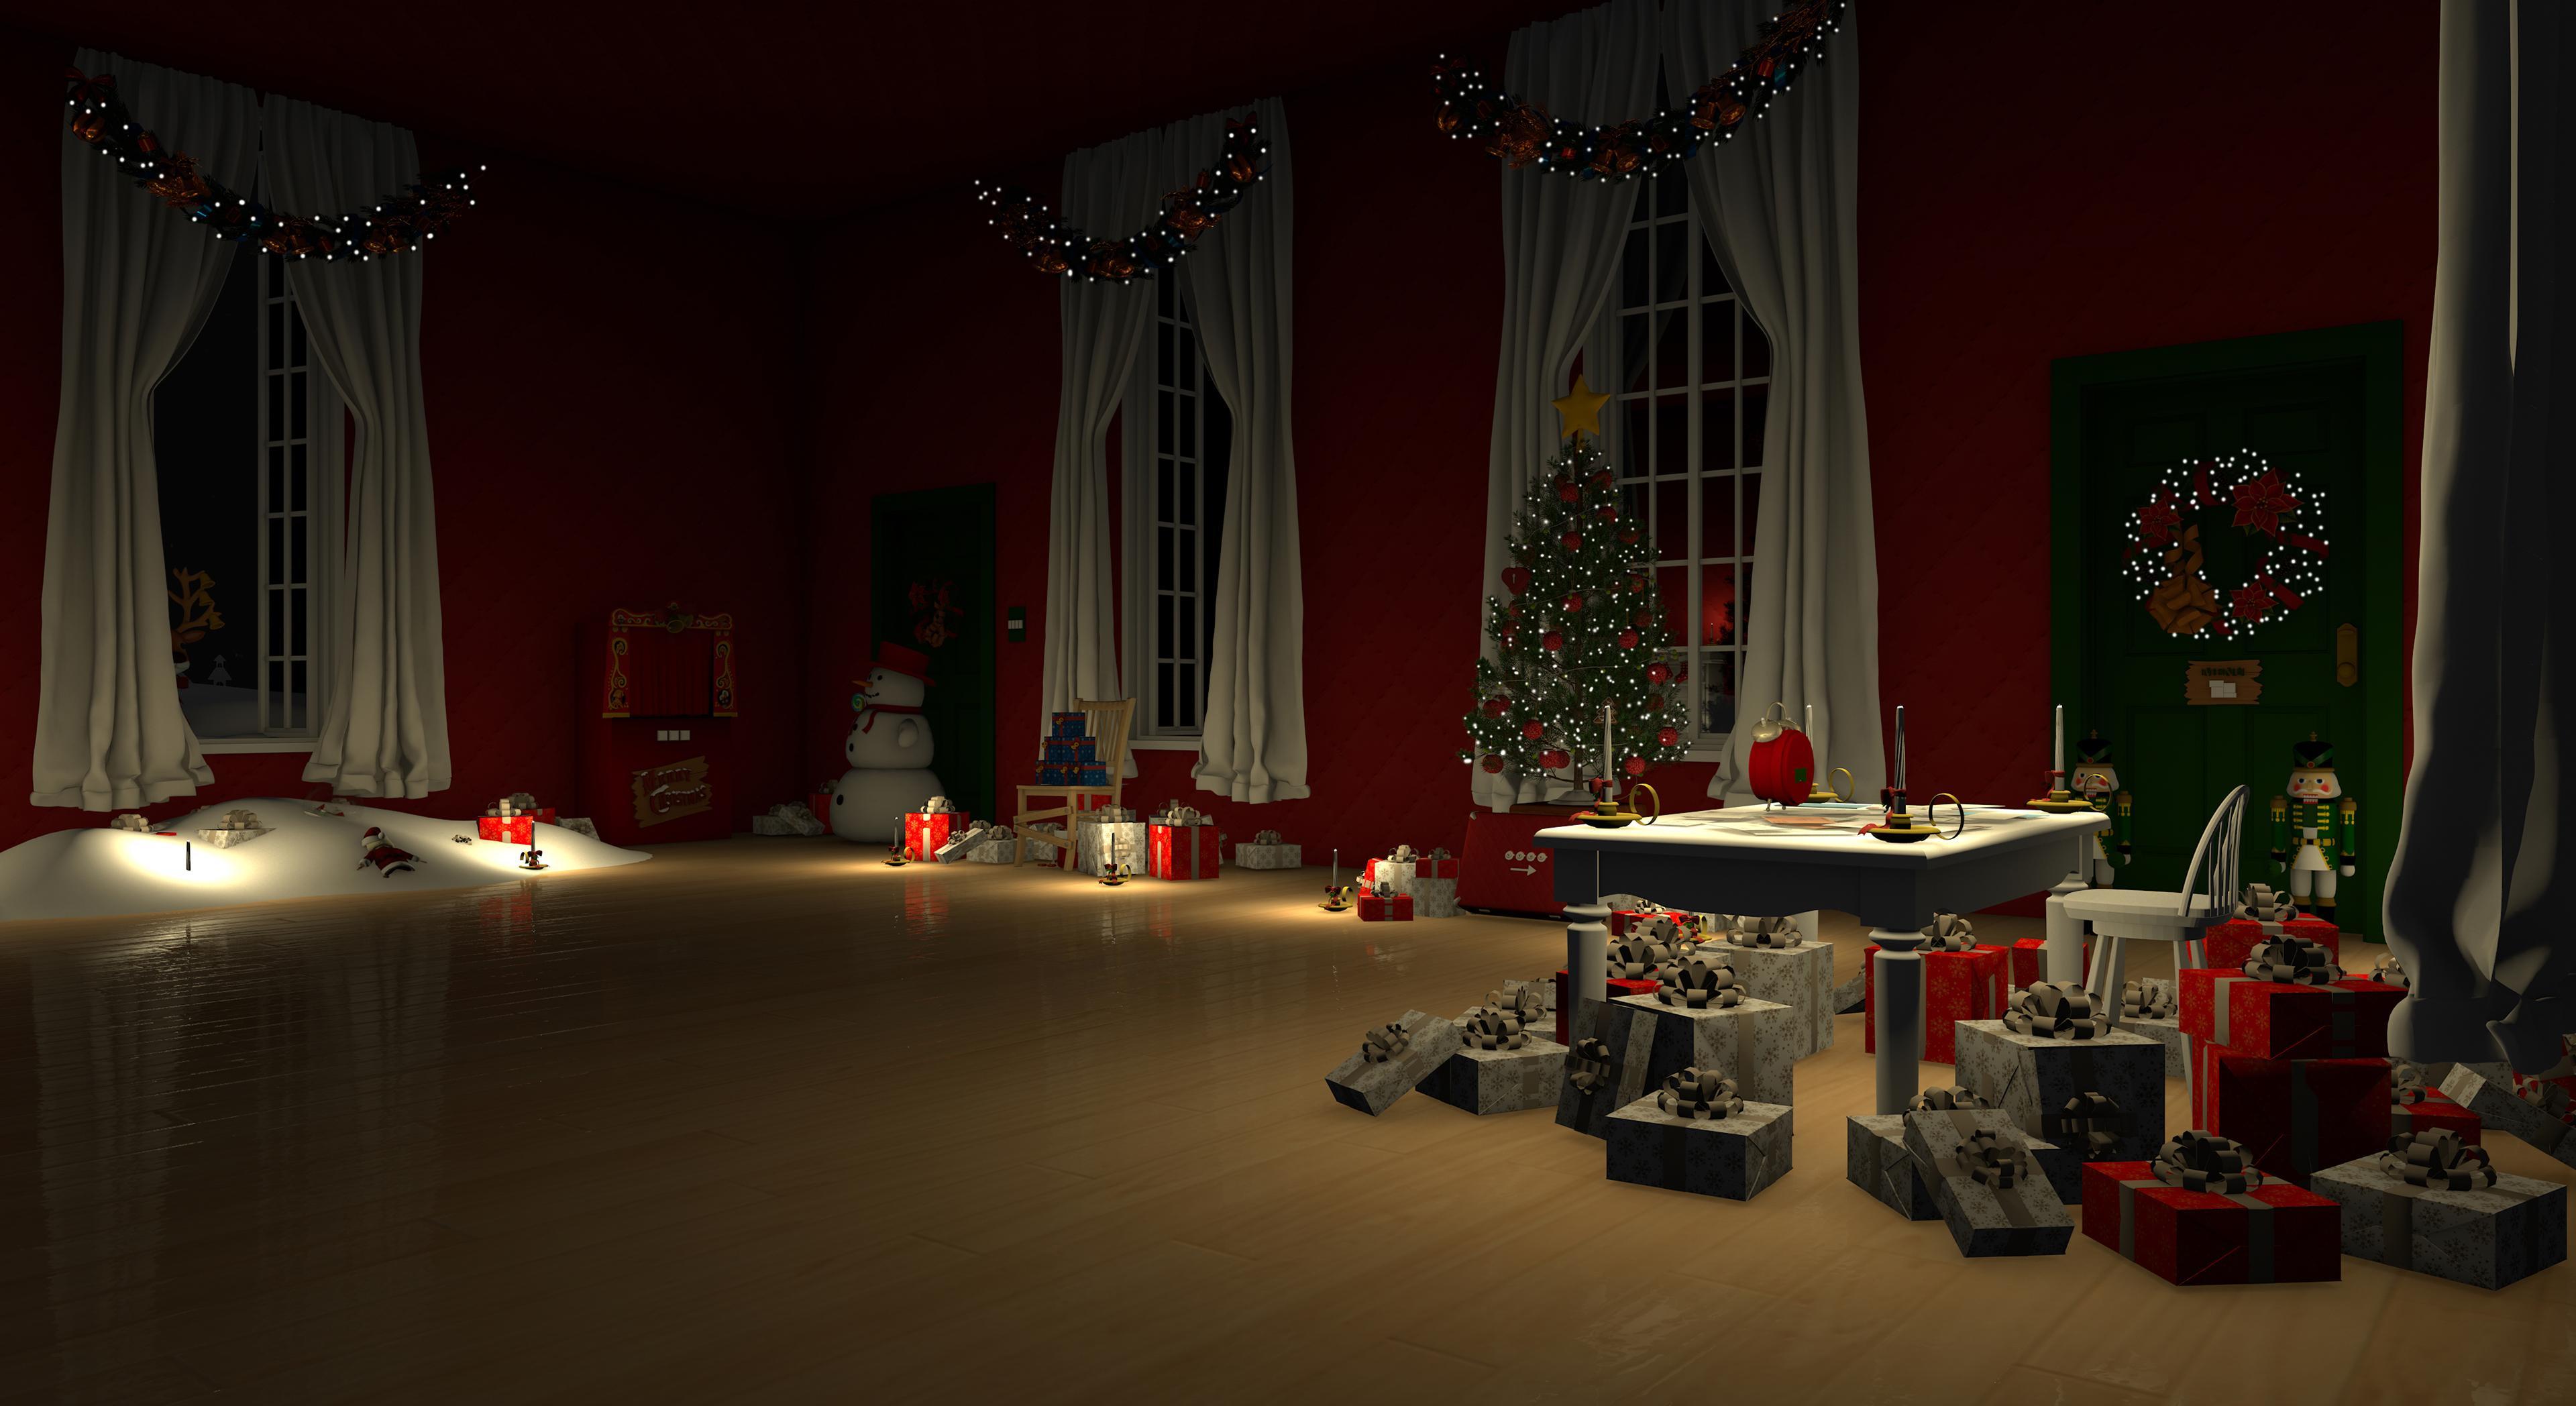 Screenshot 1 of Trò chơi trốn thoát: Giáng sinh vui vẻ 2.22.2.0